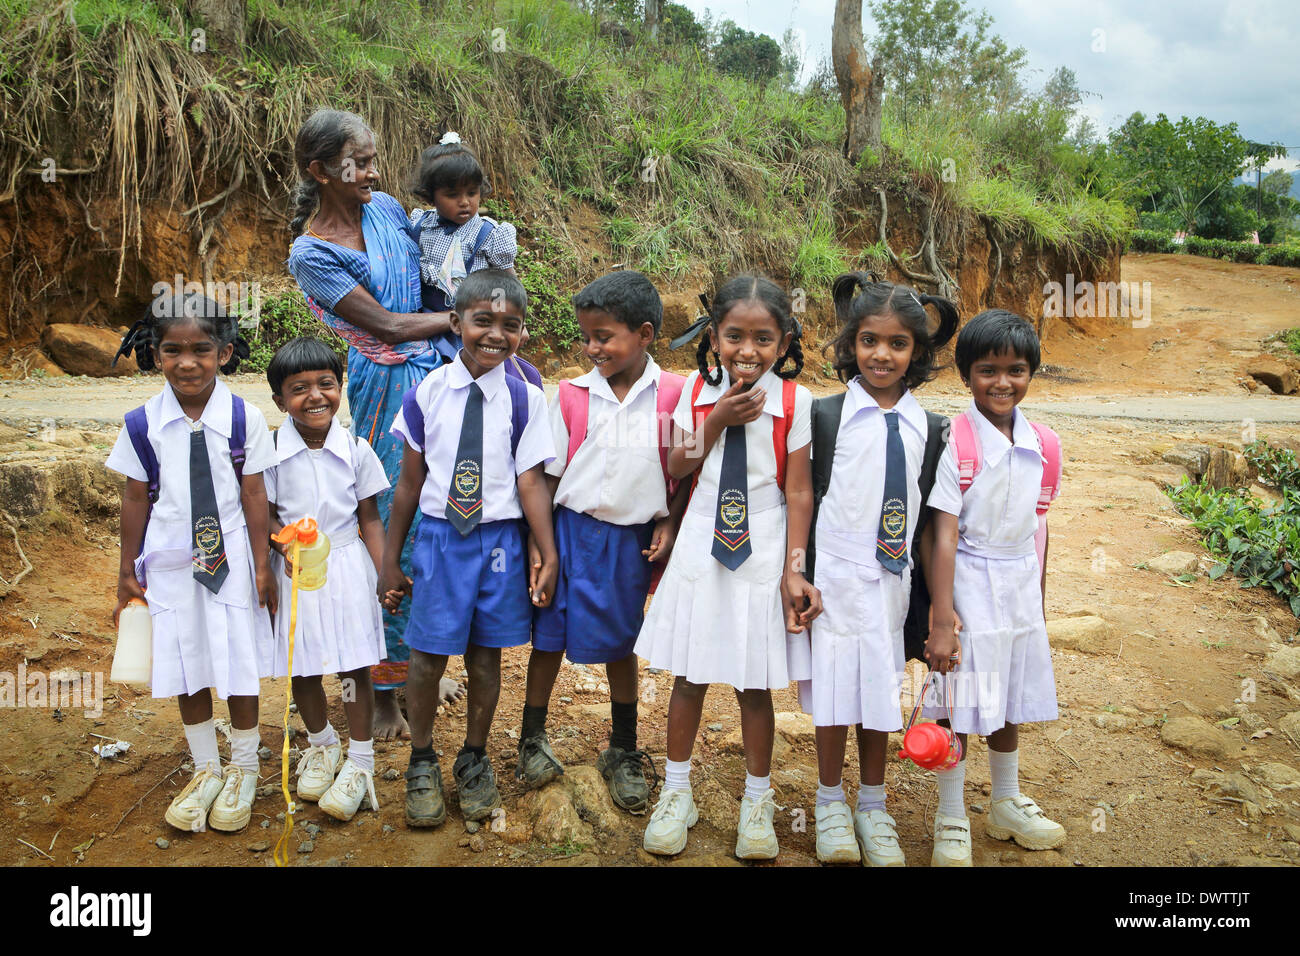 Les jeunes écoliers en uniforme soigneusement alignés sur leur chemin de retour de l'école dans une plantation de thé community Banque D'Images